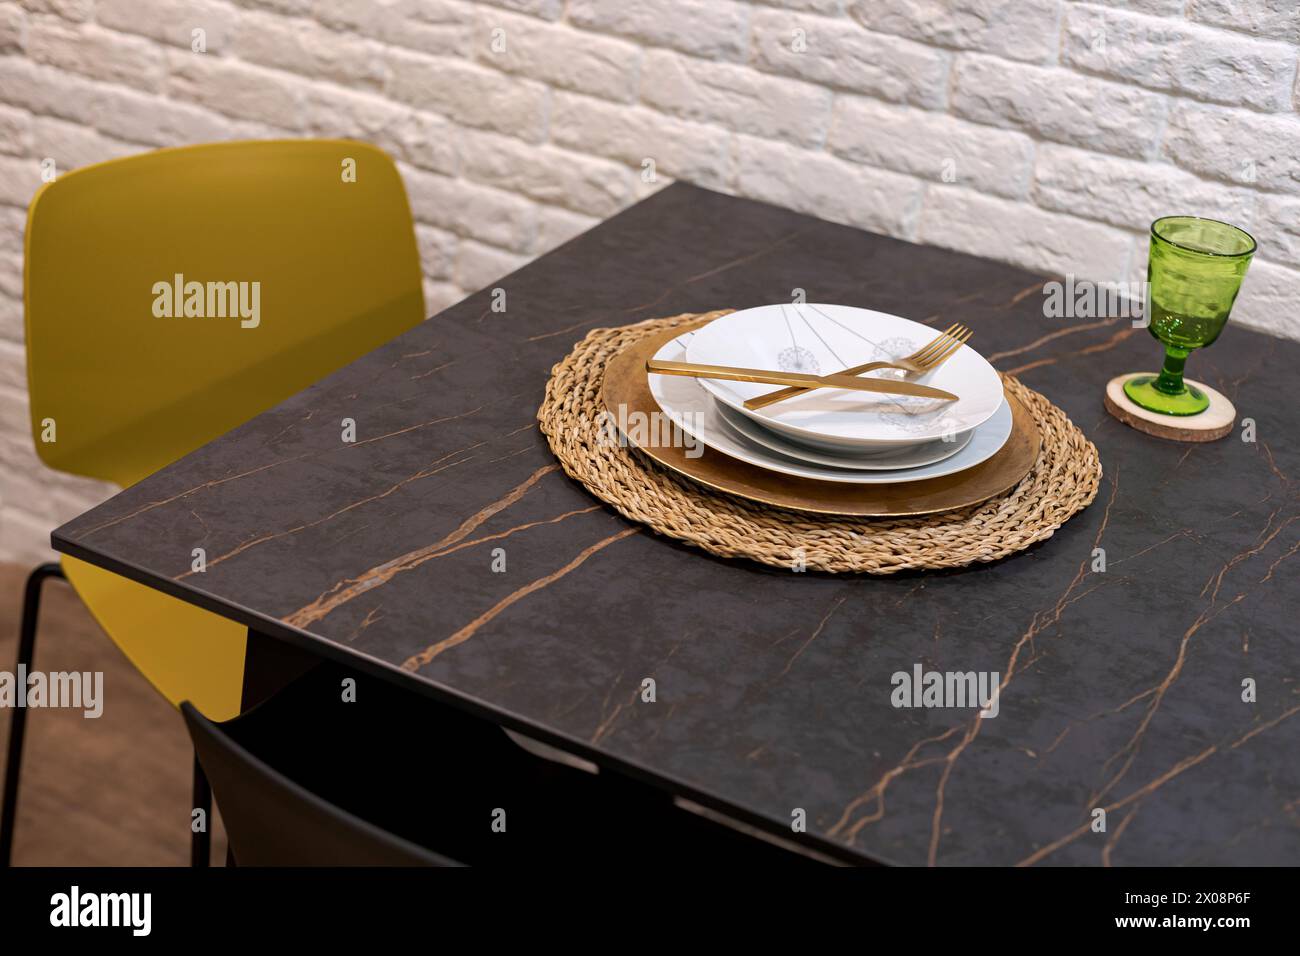 Table élégante avec assiettes blanches, couverts dorés et verre vert sur une table en marbre Banque D'Images